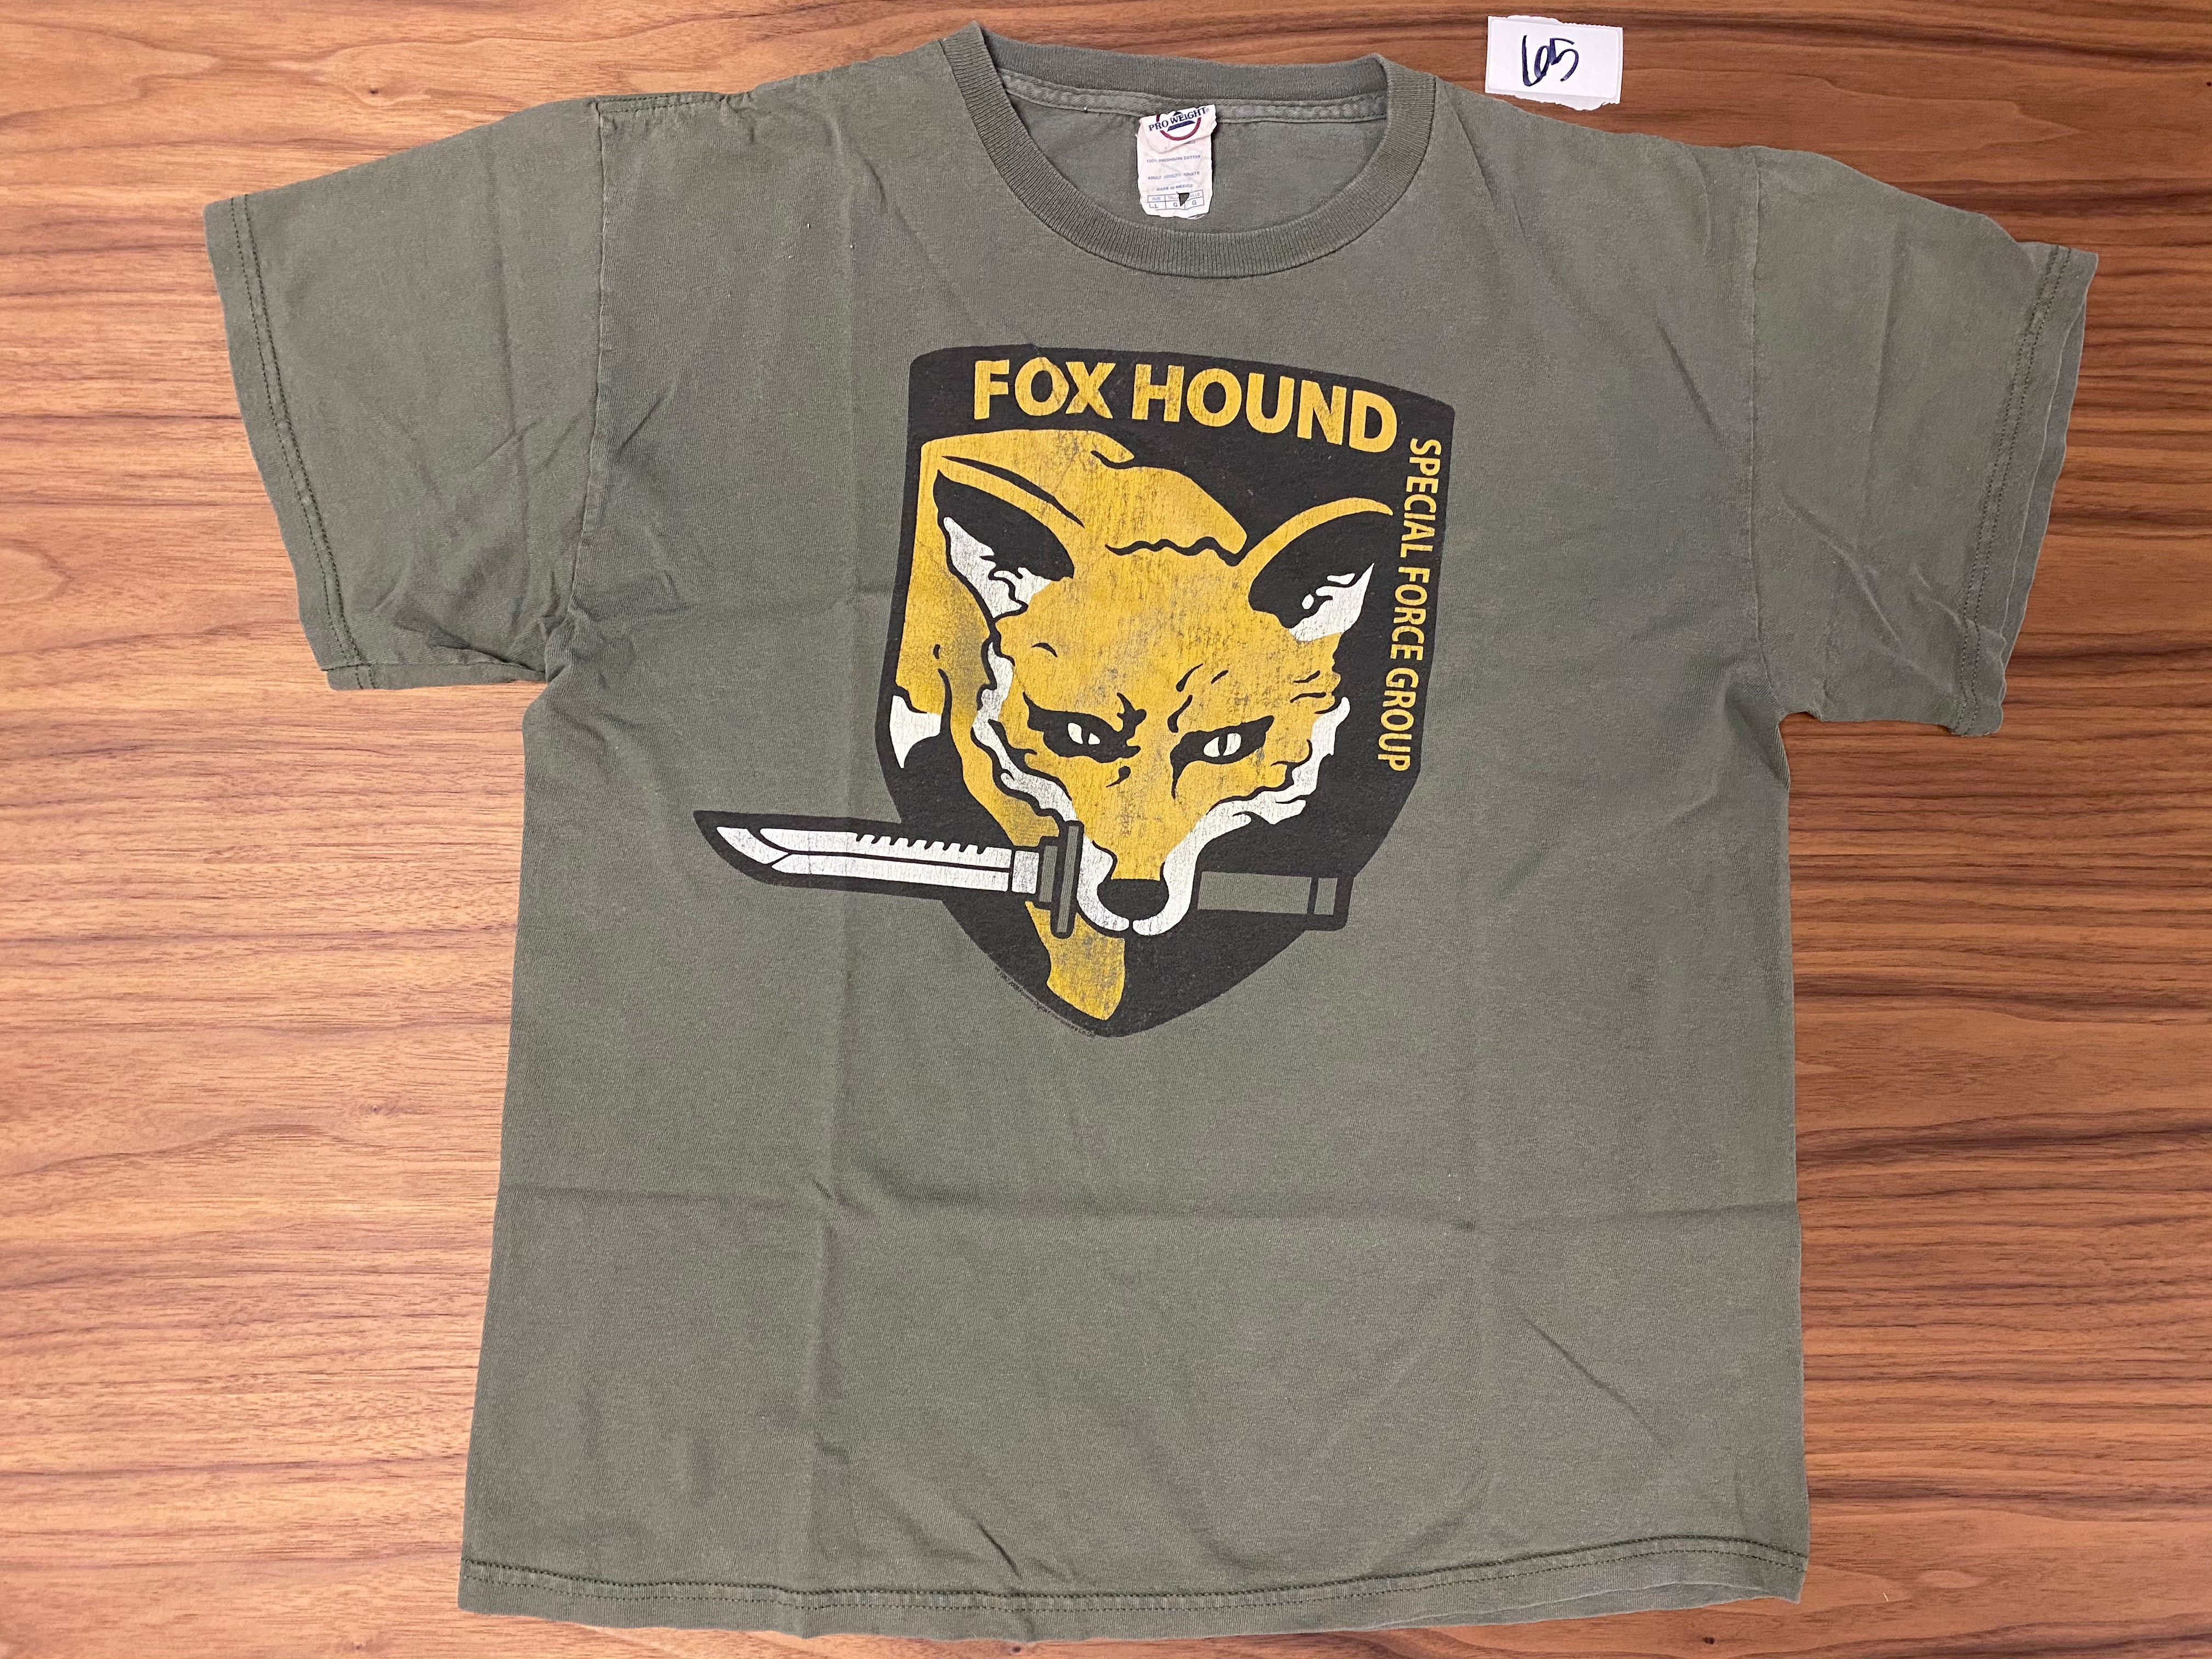 Delta Fox Hound Tee - Grey